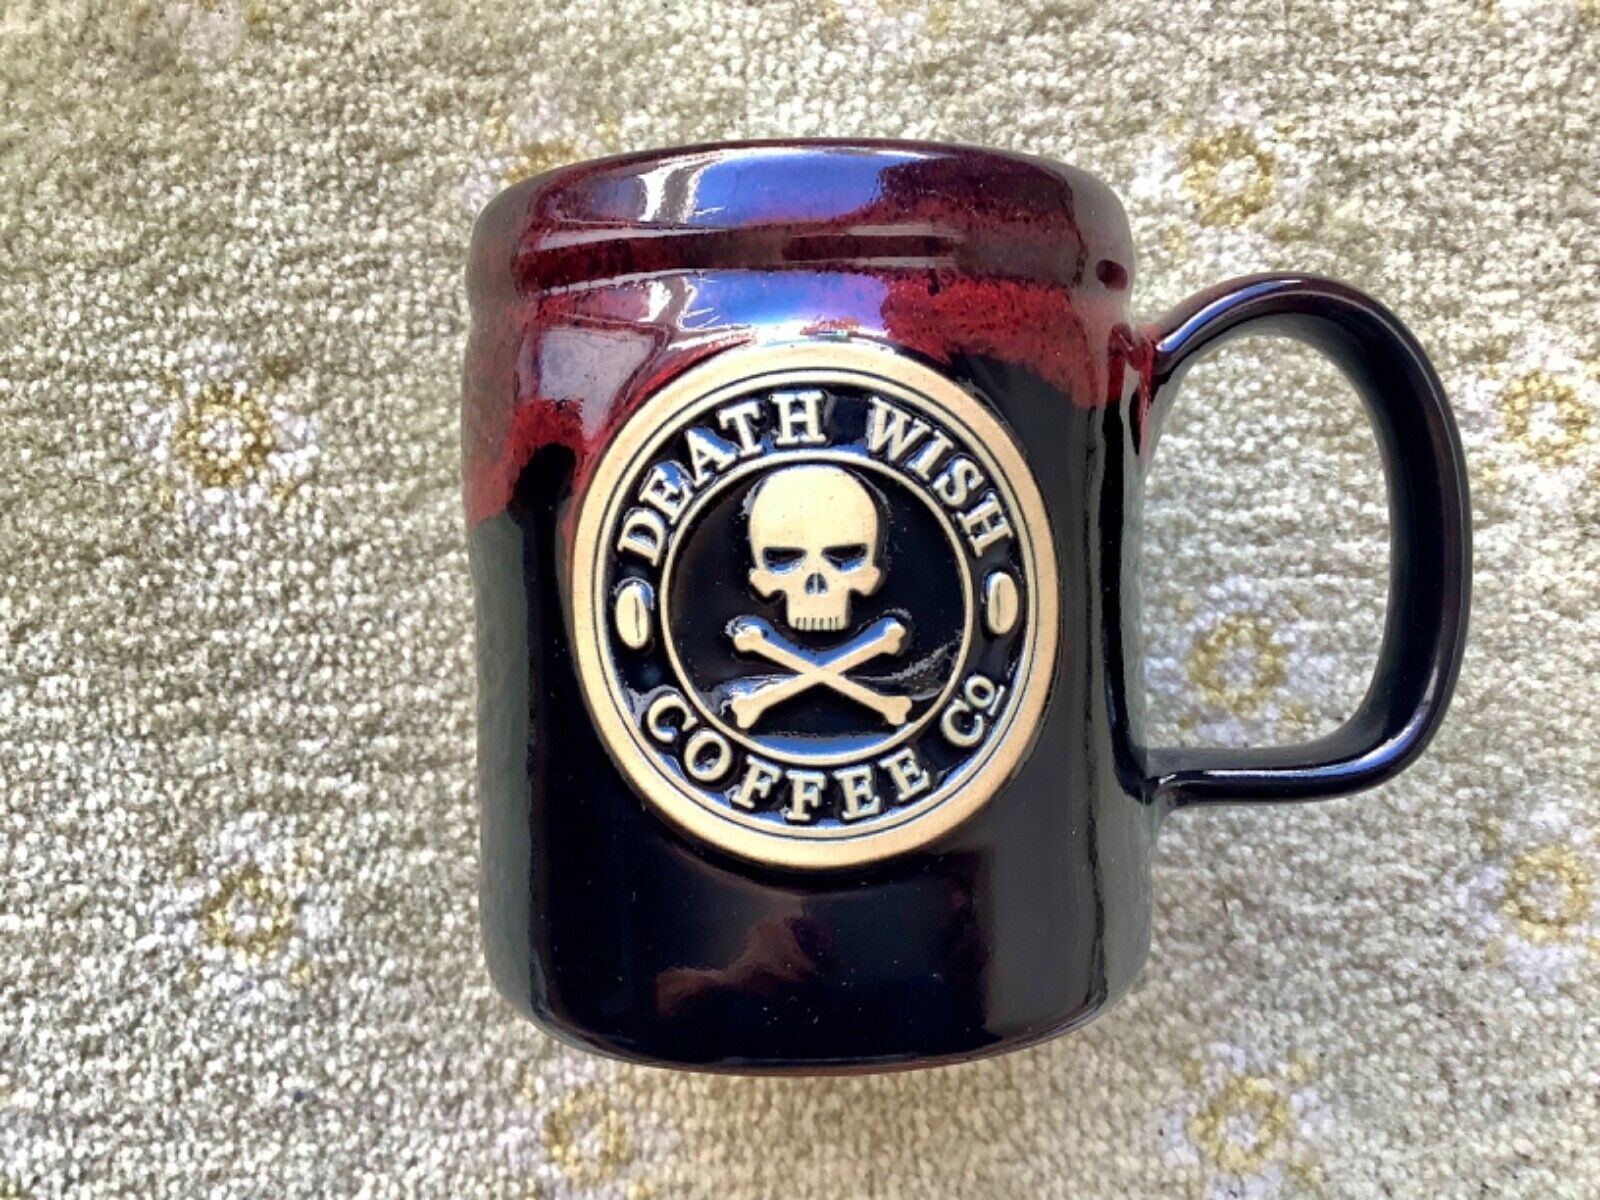 death wish coffee 2014 camper mug deneen pottery collectibles rare original